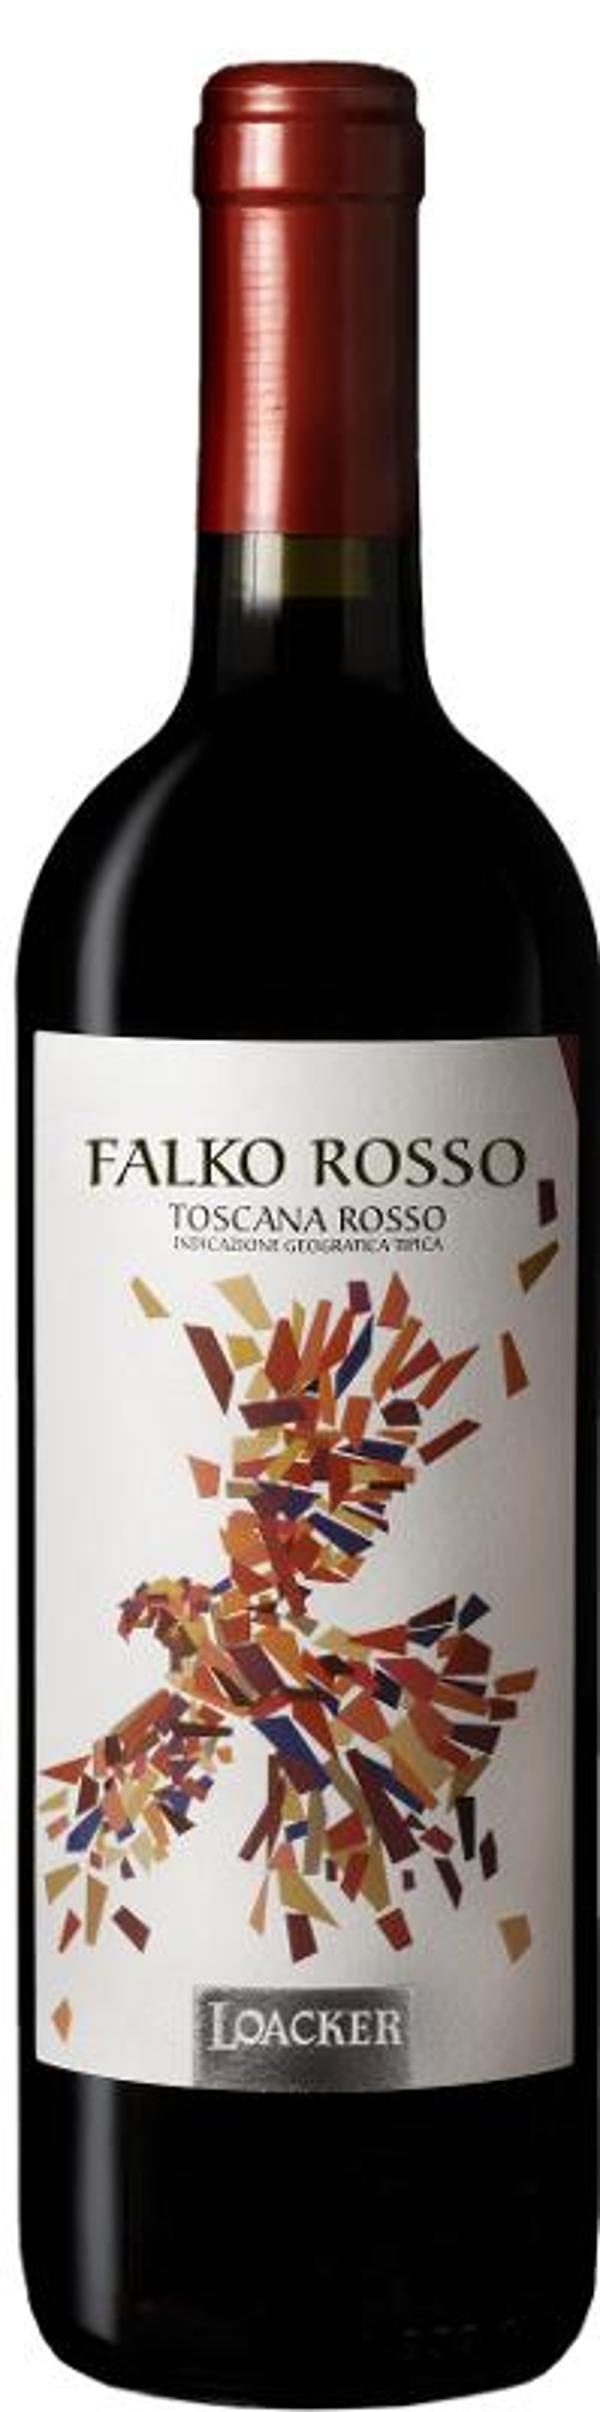 Produktfoto zu Falko Rosso Toscana Loacker IGT, rot, trocken 0,75l